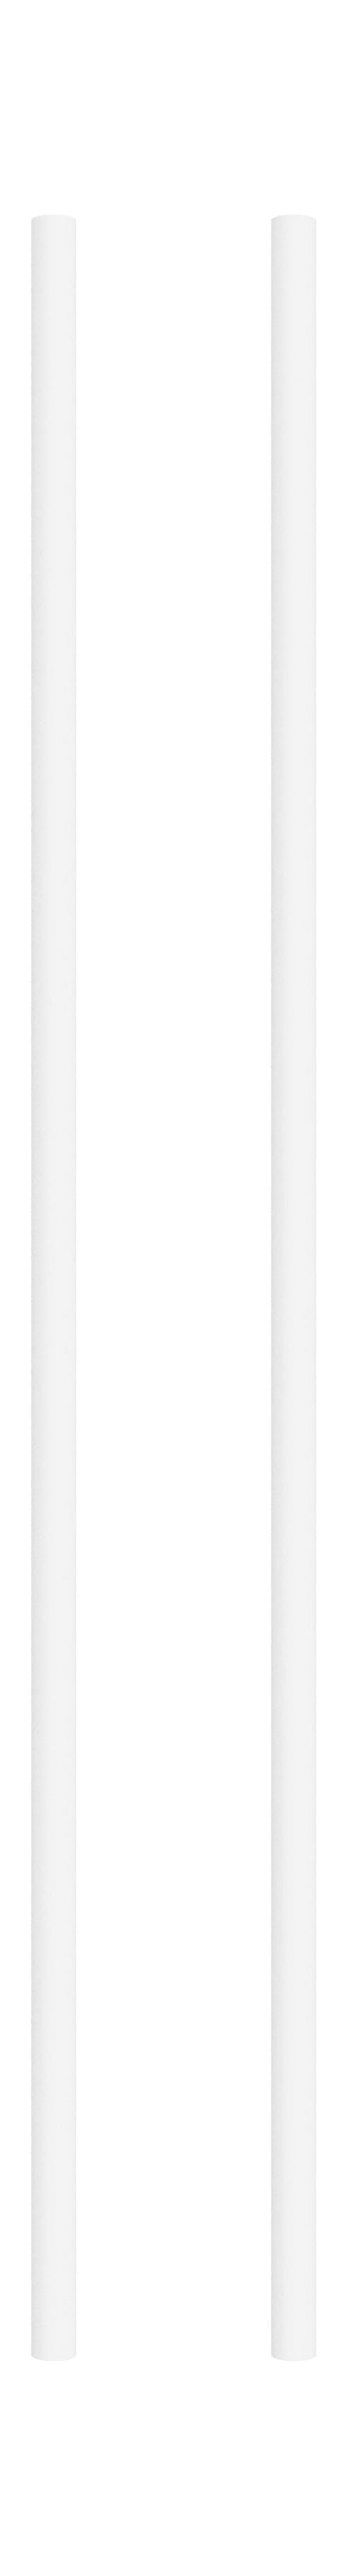 Moebe -Regalsystem/Wandregalbein 85 cm Weiß, 2 Set von 2